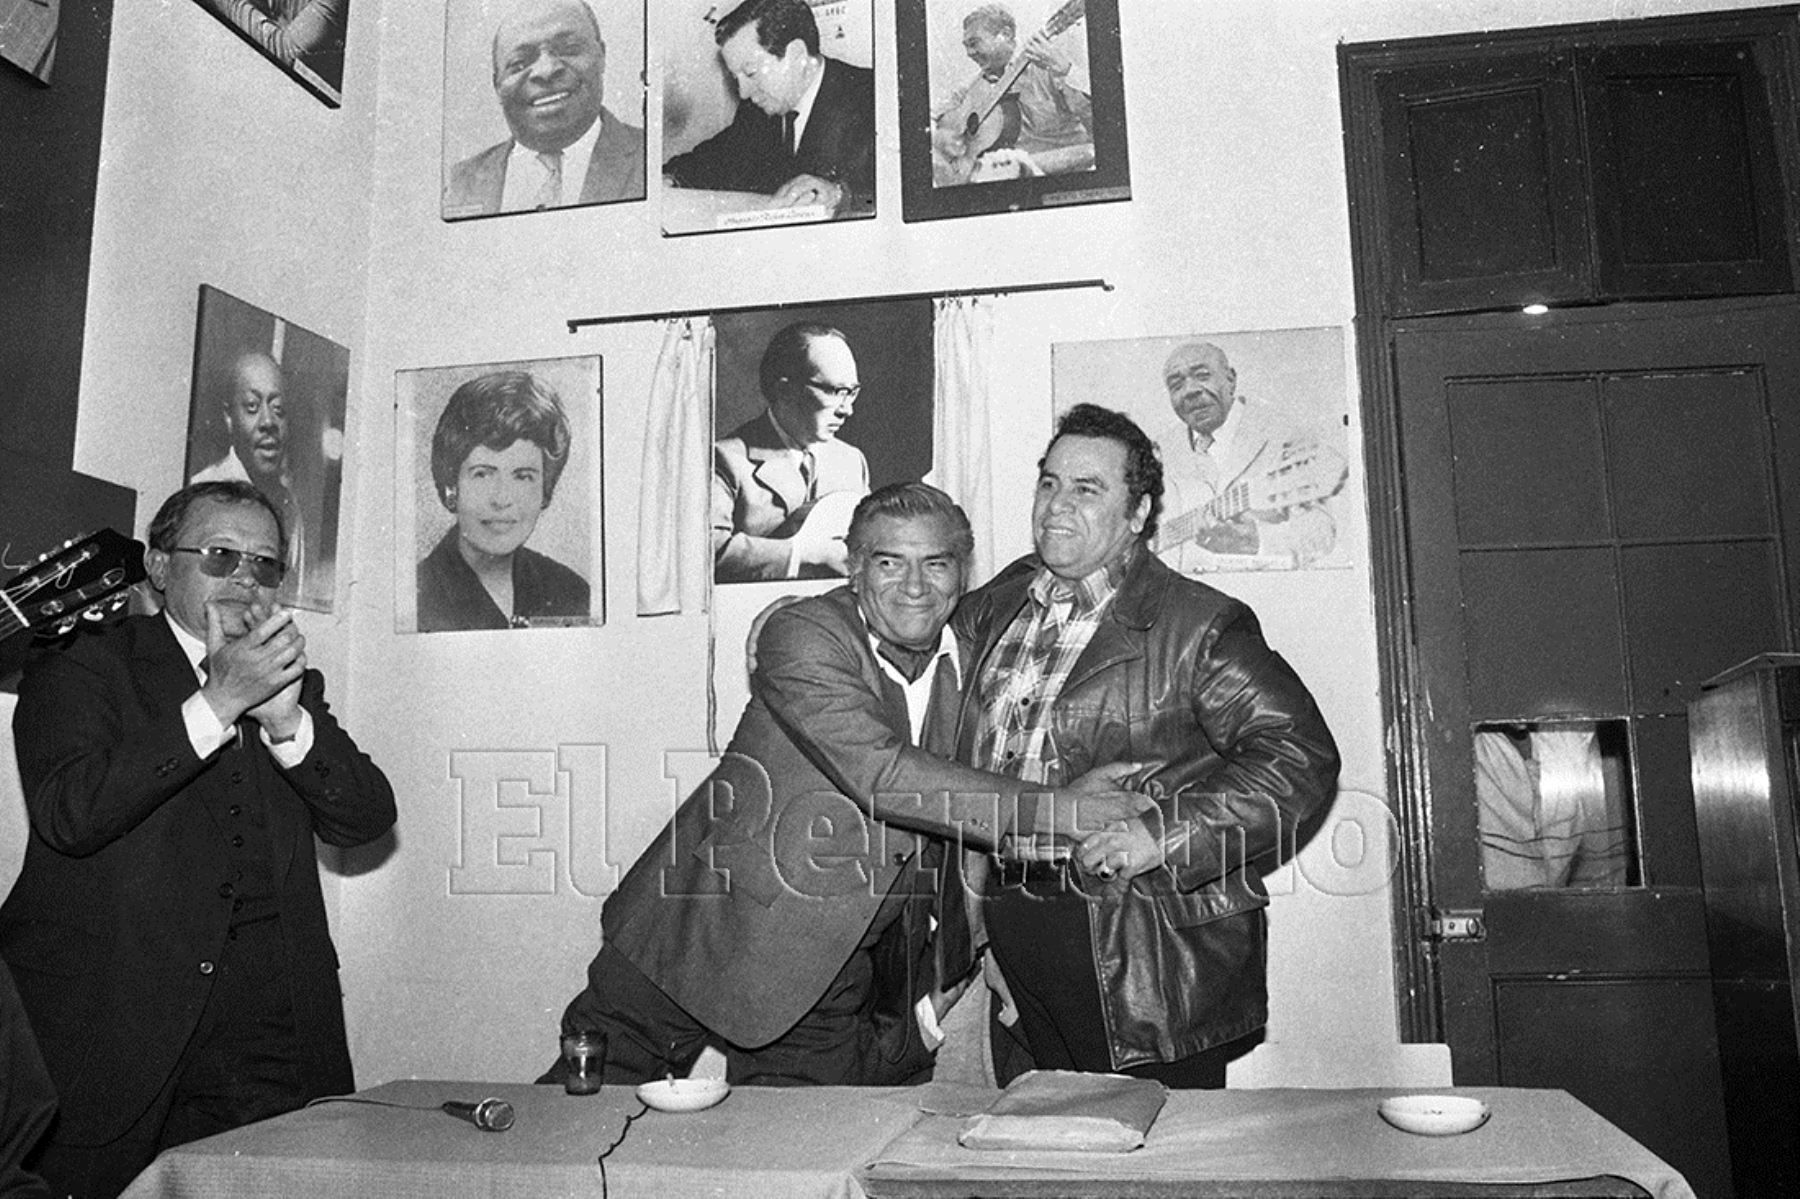 Lima - 15 julio 1986 / Fraternal encuentro entre los compositores Augusto Polo Campos y Manuel Acosta Ojeda en una peña criolla.